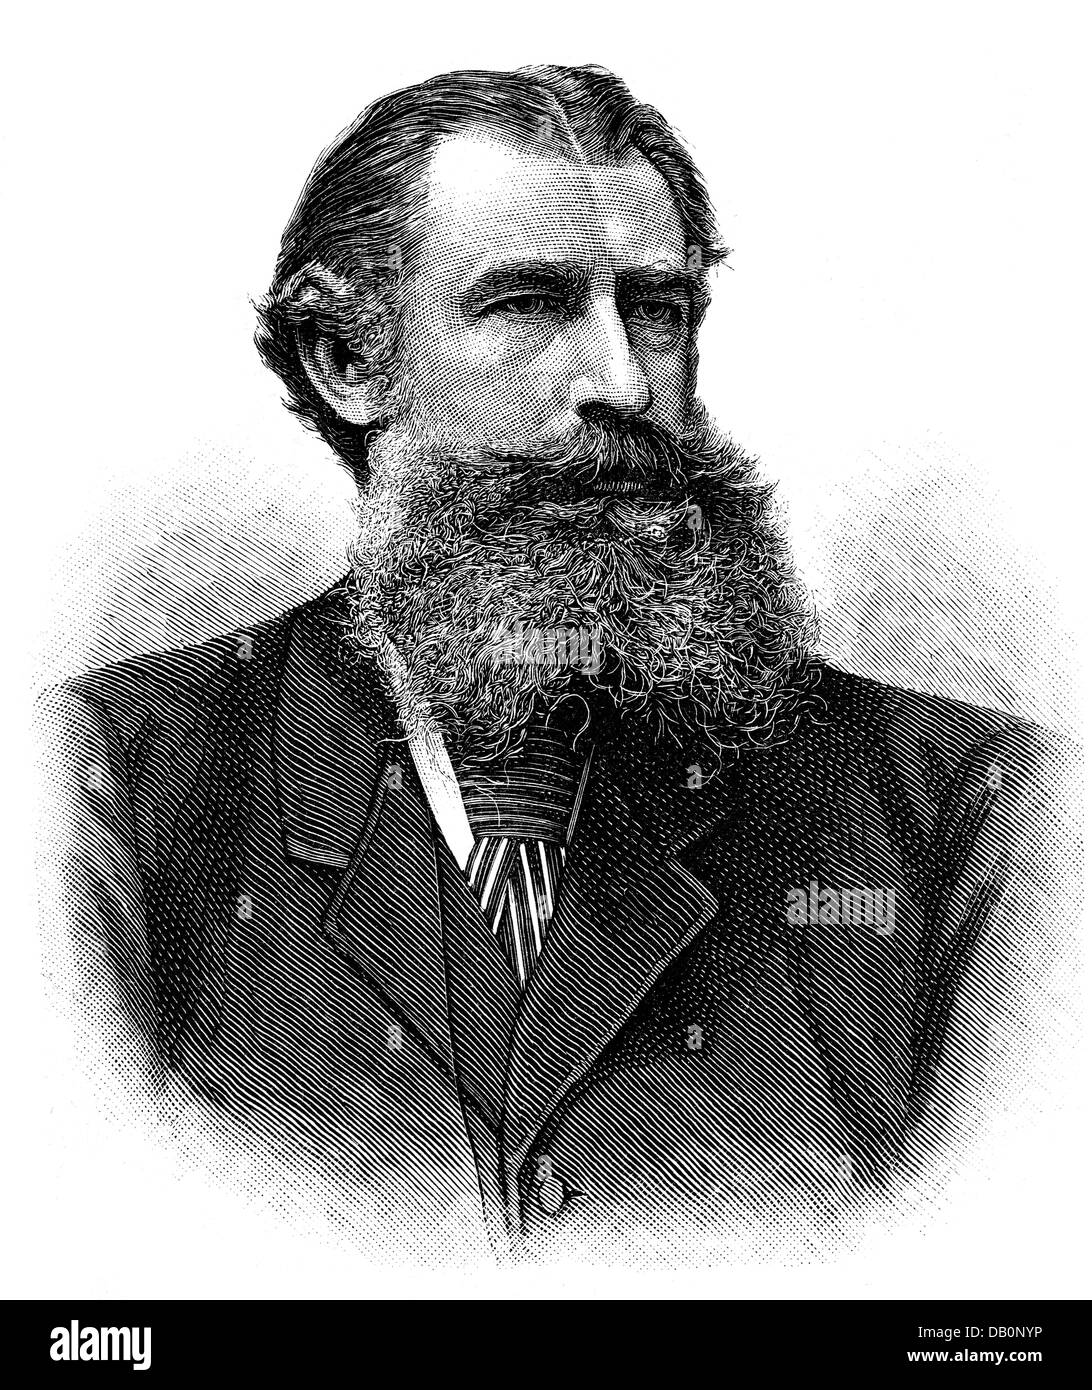 Szechenyi, Imre, 1825 - 1898, Hungarian diplomat, ambassador to Germany 1878 - 1892, portrait, wood engraving, 1884, Stock Photo